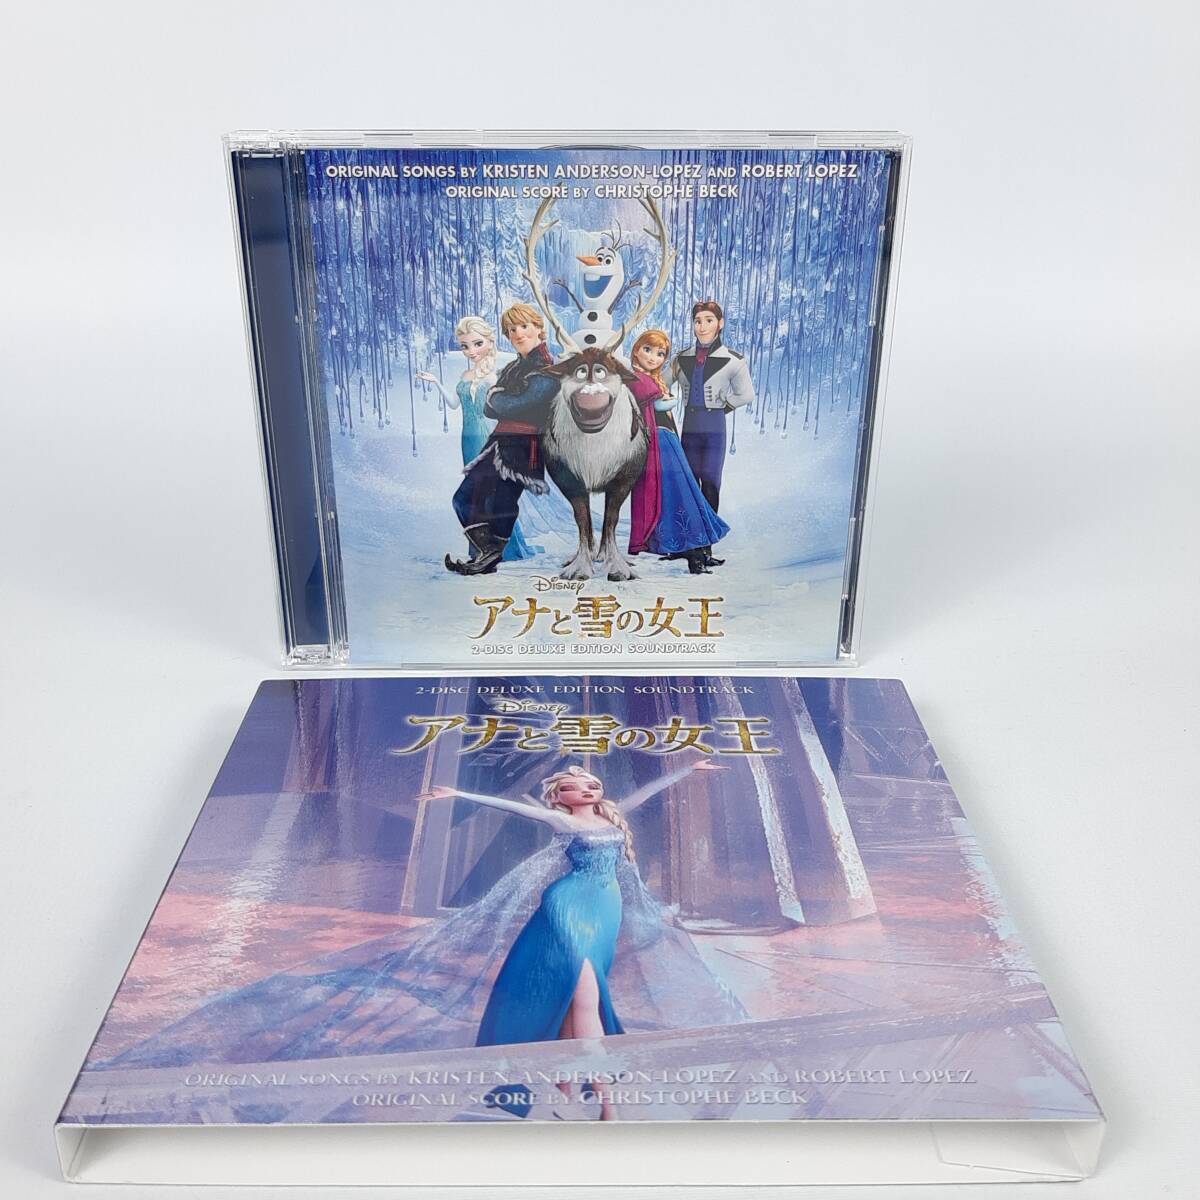 「アナと雪の女王」 オリジナル・サウンドトラックーデラックス・エディションー[初回盤スリーブケース付]の画像1